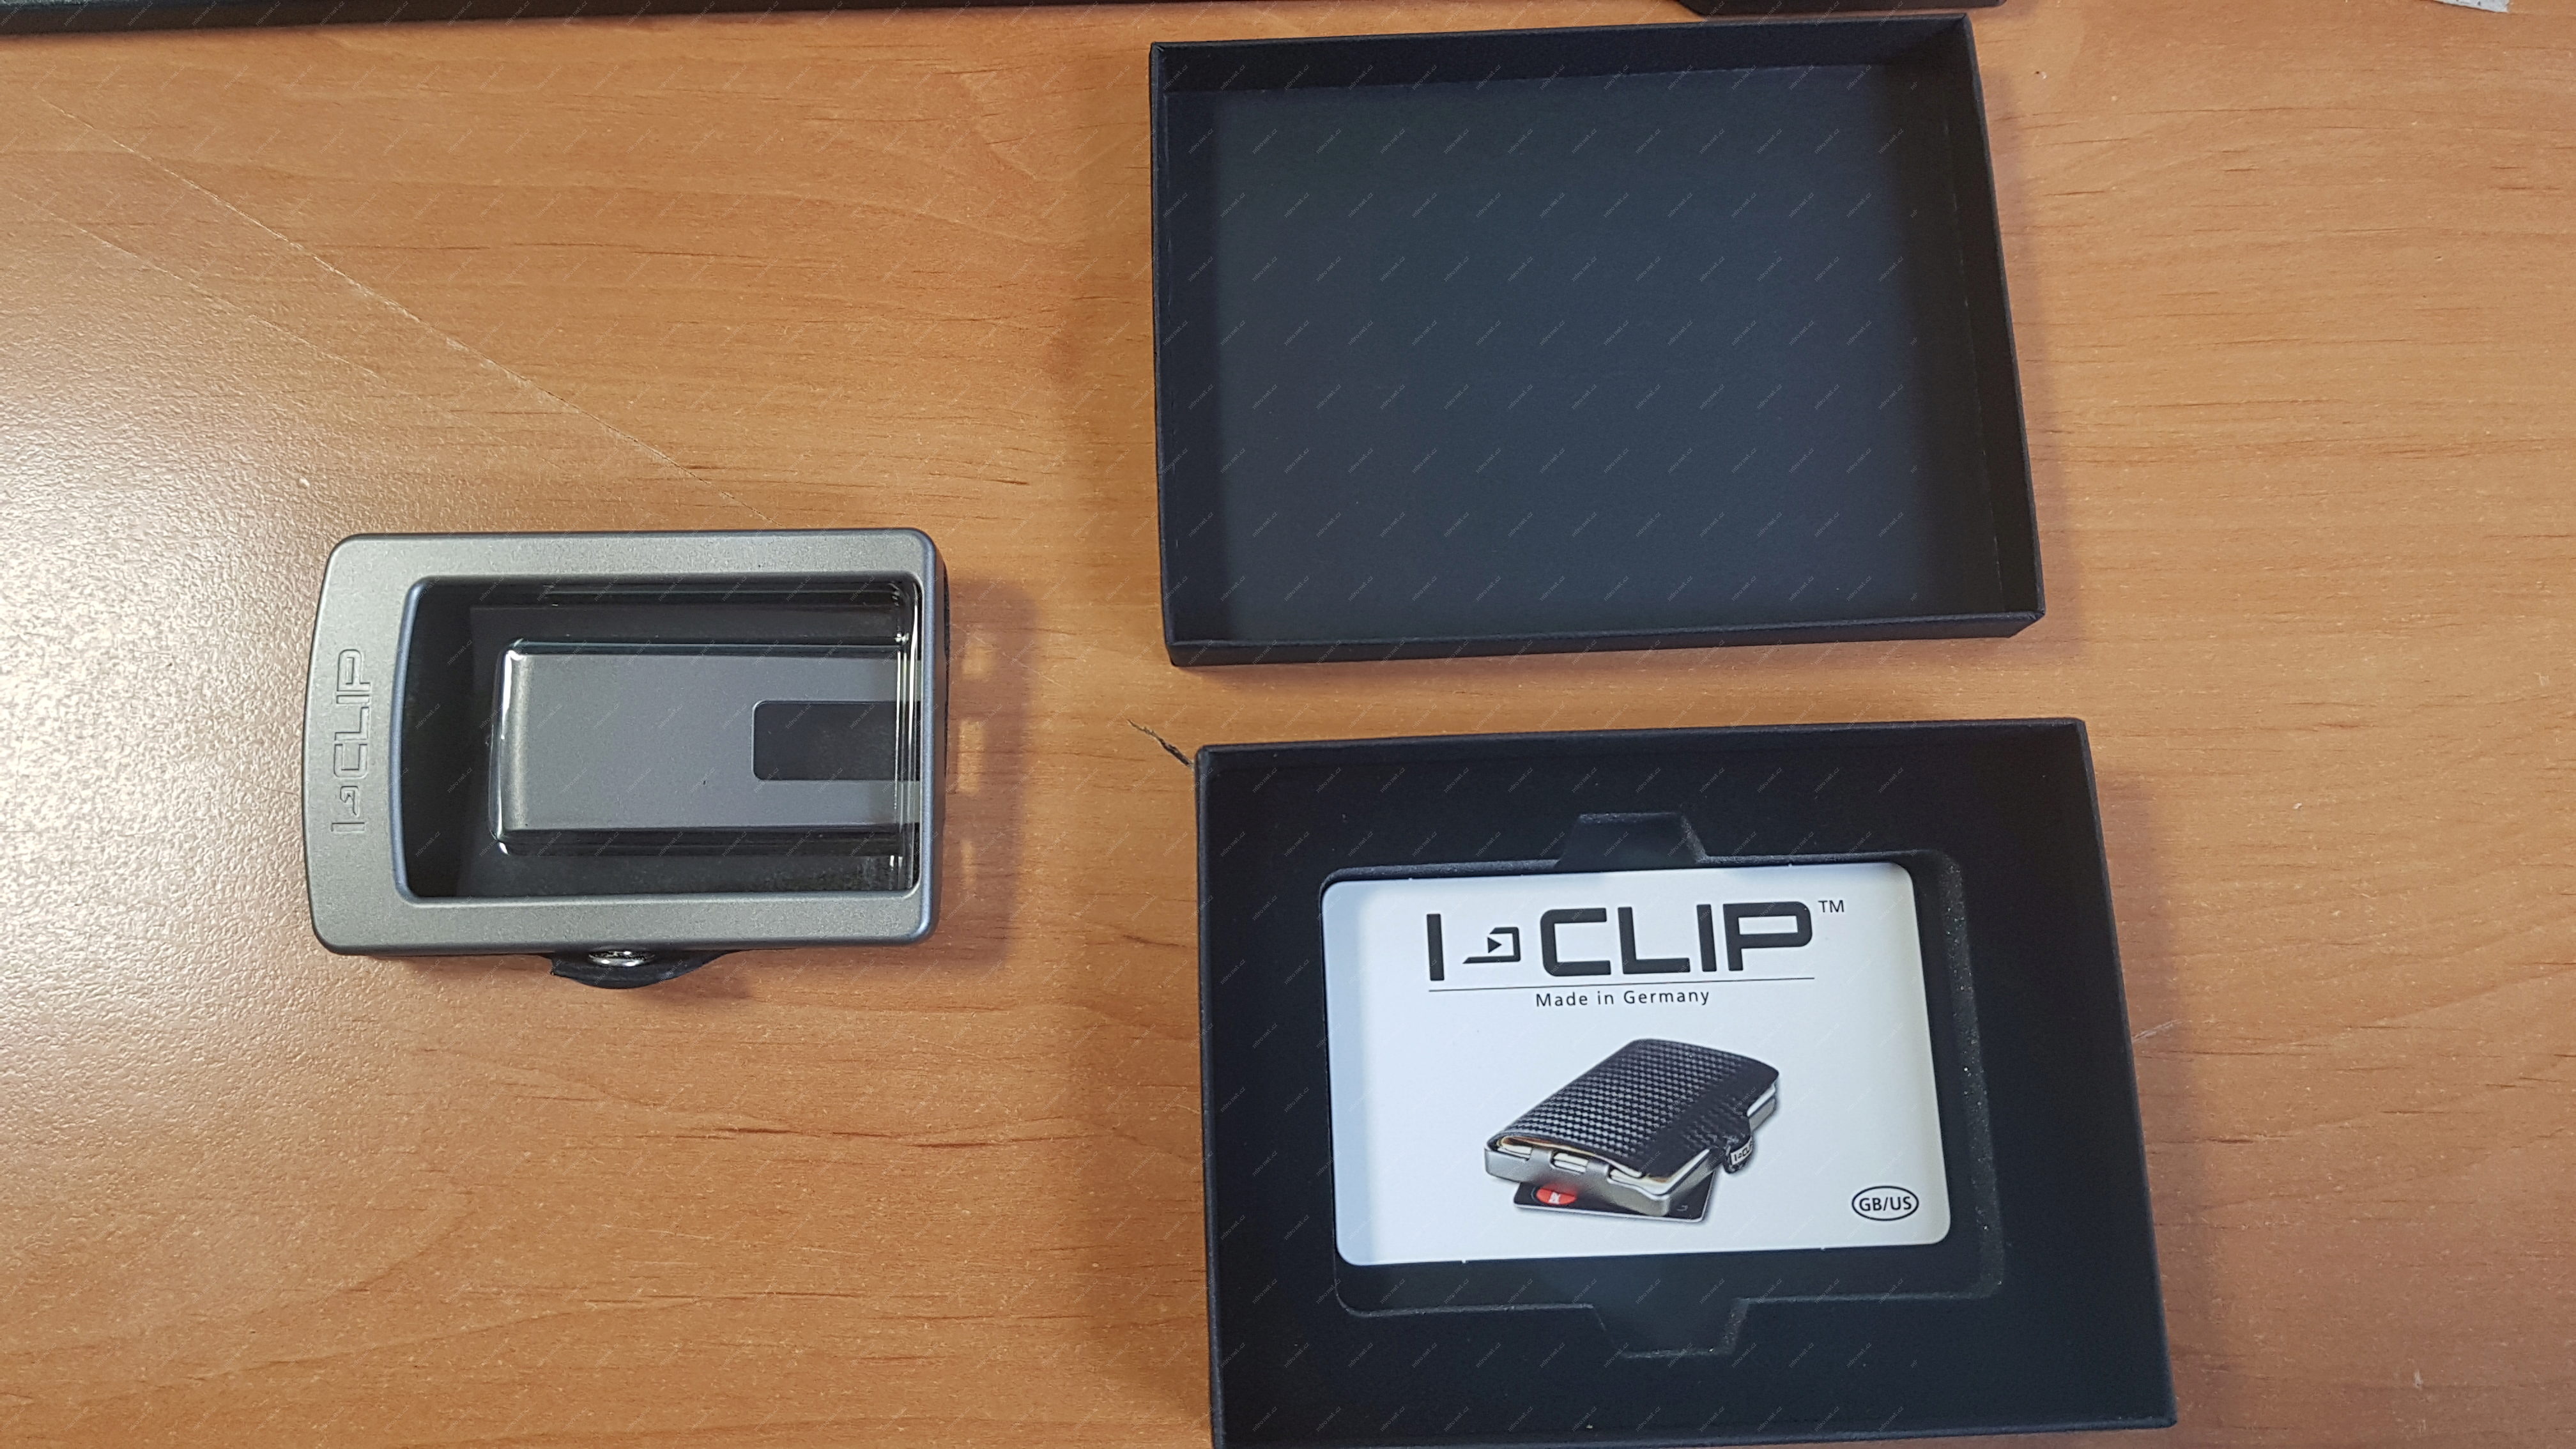 BlackBerry i-clip pilot peněženka / černý